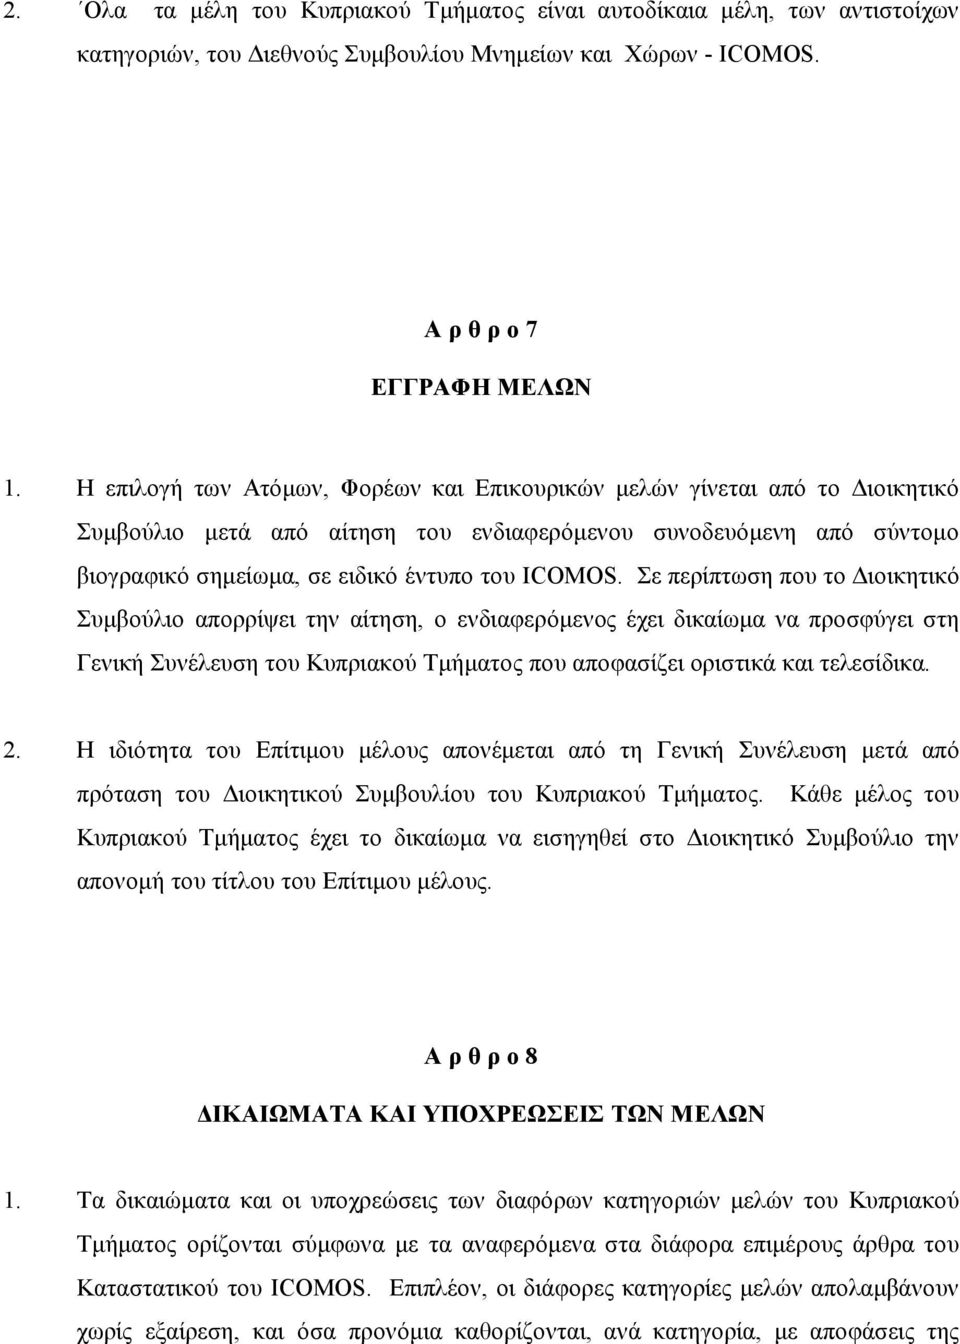 Σε περίπτωση που το Διοικητικό Συμβούλιο απορρίψει την αίτηση, ο ενδιαφερόμενος έχει δικαίωμα να προσφύγει στη Γενική Συνέλευση του Κυπριακού Τμήματος που αποφασίζει οριστικά και τελεσίδικα. 2.